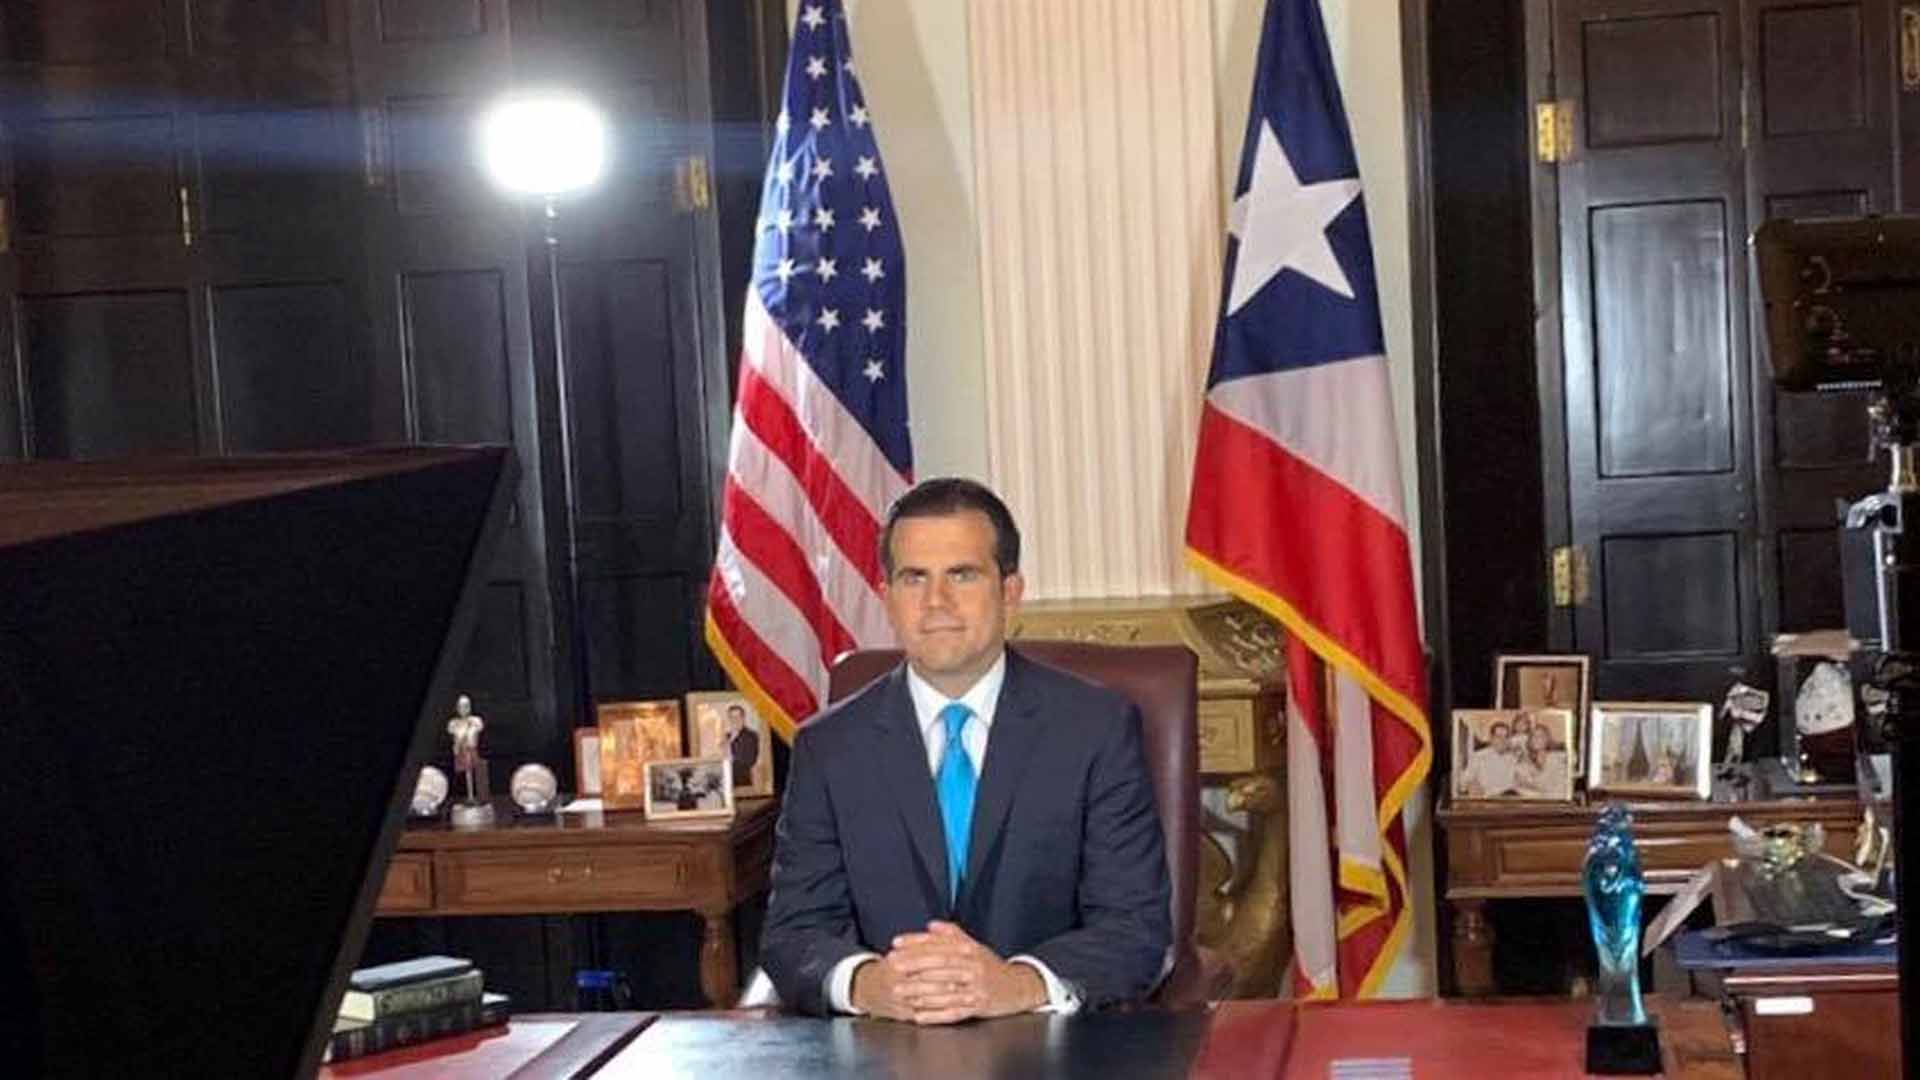 El gobernador de Puerto Rico, Ricardo Rosselló, anuncia su dimisión tras las protestas masivas